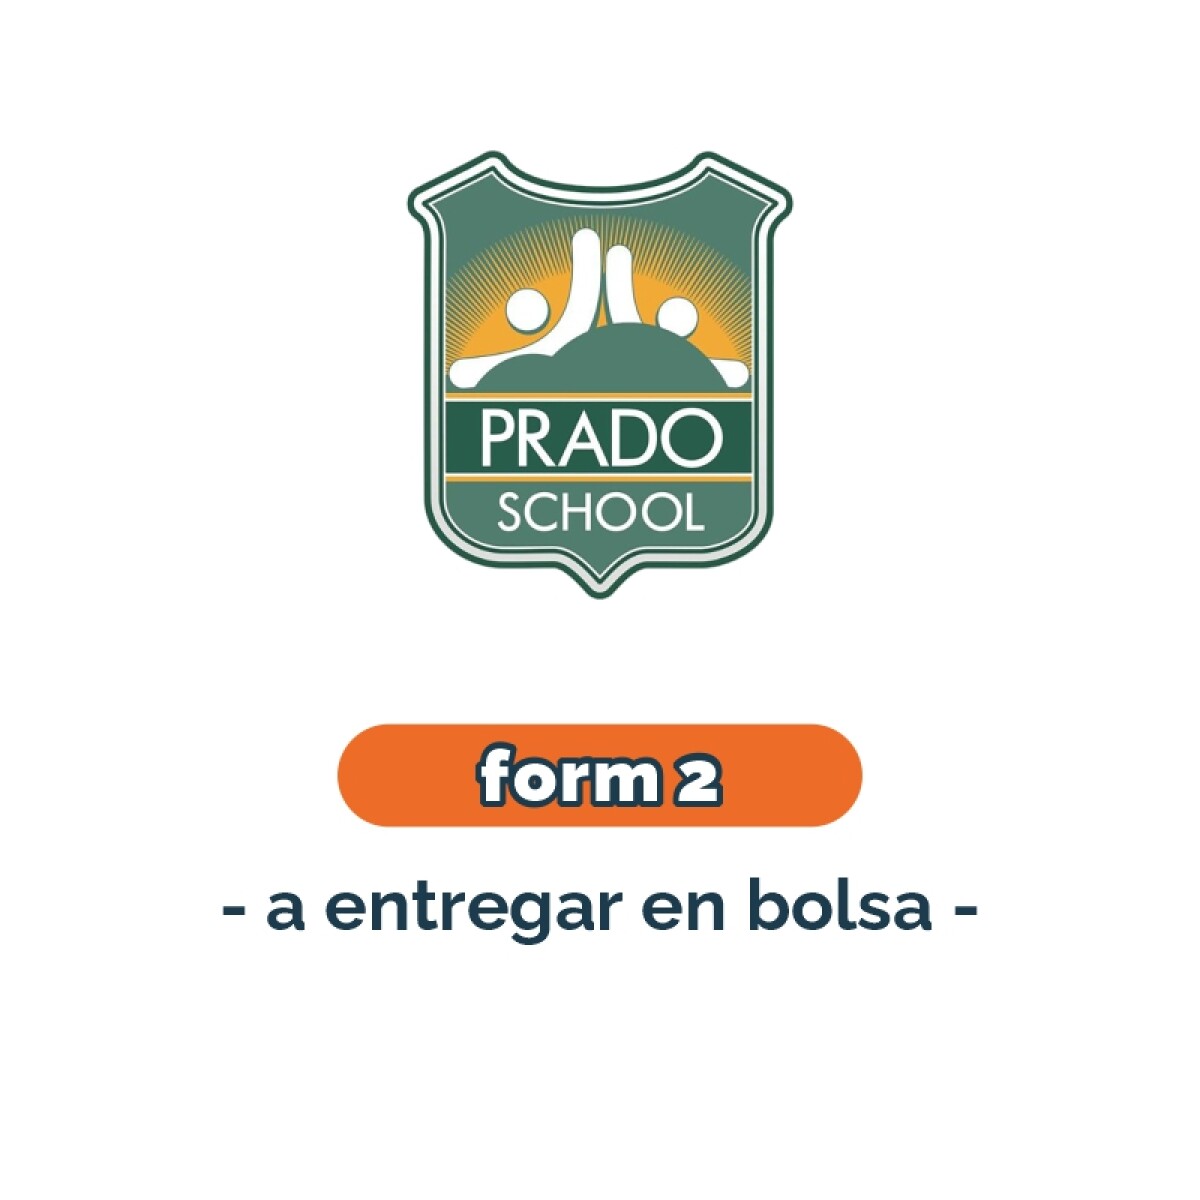 Lista de materiales - Primaria Form 2 materiales en bolsa Prado School 